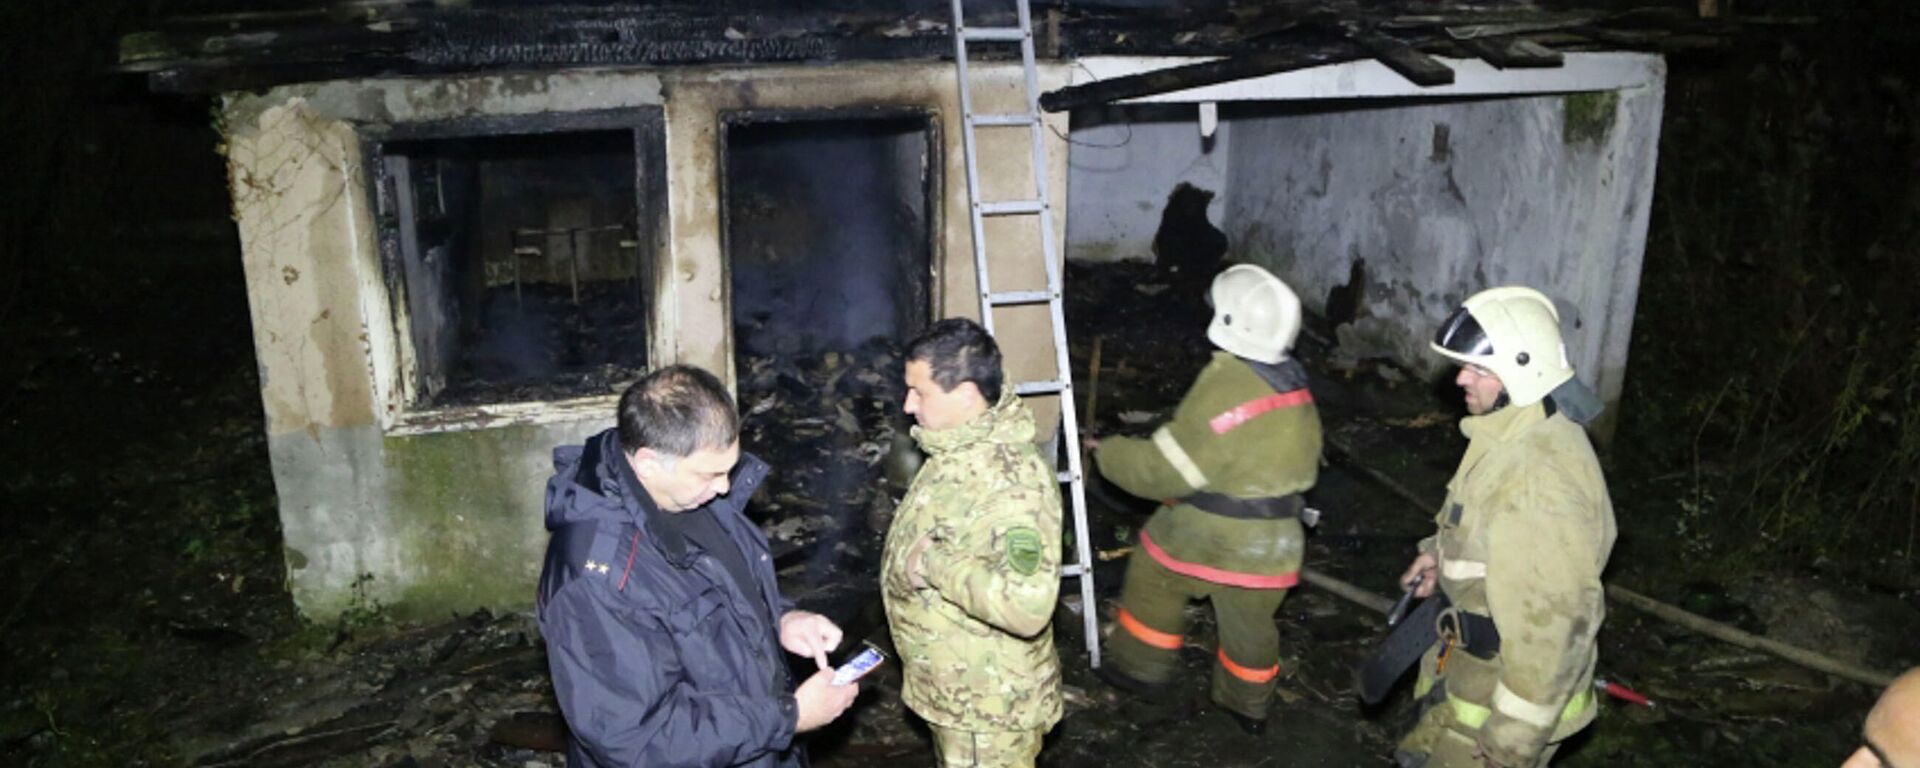 Сгоревшее подсобное помещение частного одноэтажного дома по Бзыпскому шоссе  - Sputnik Абхазия, 1920, 16.12.2021